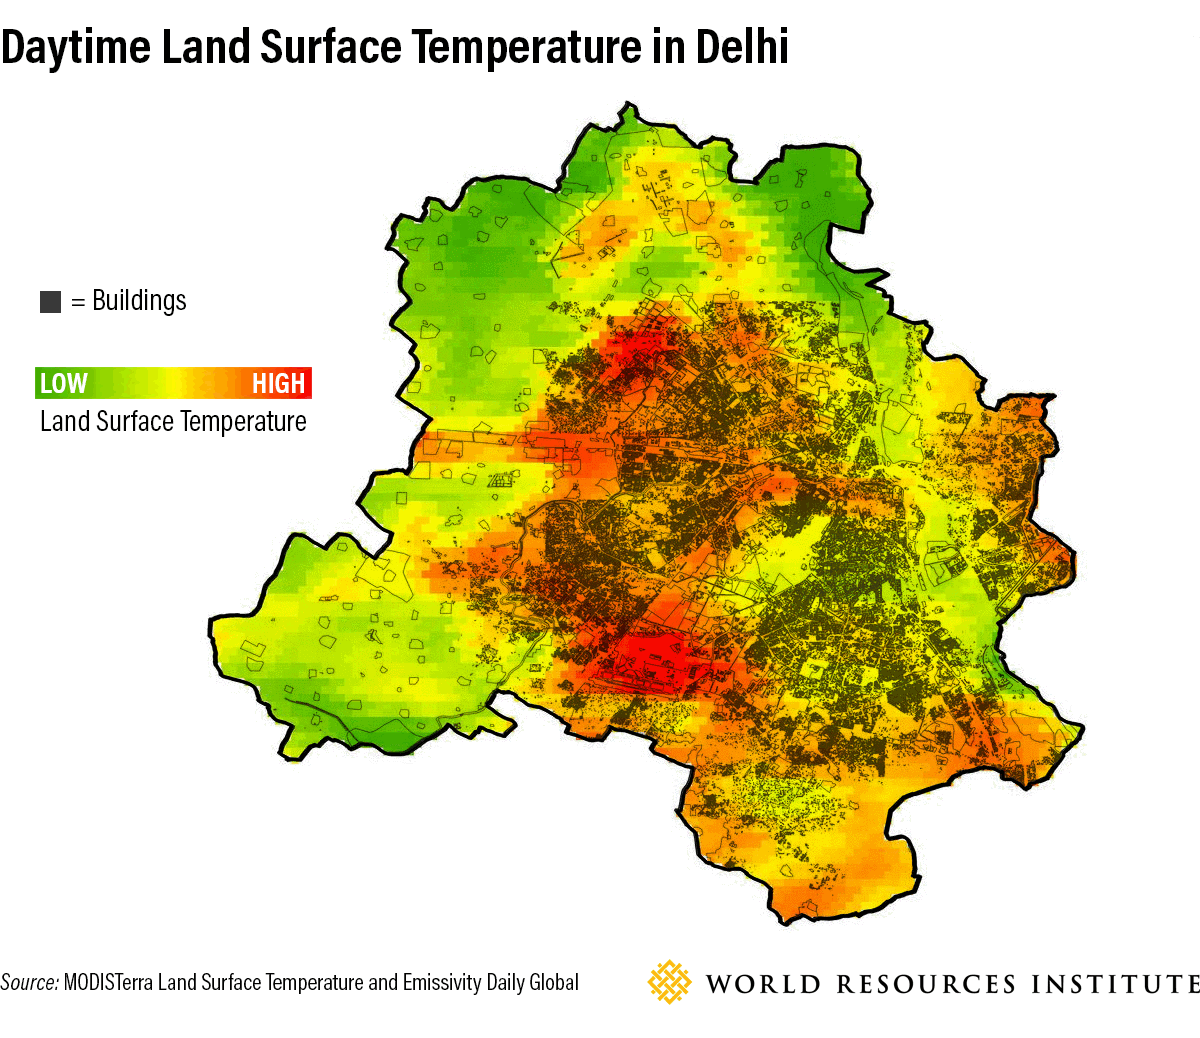 Daytime Land Surface Temperatures in Delhi